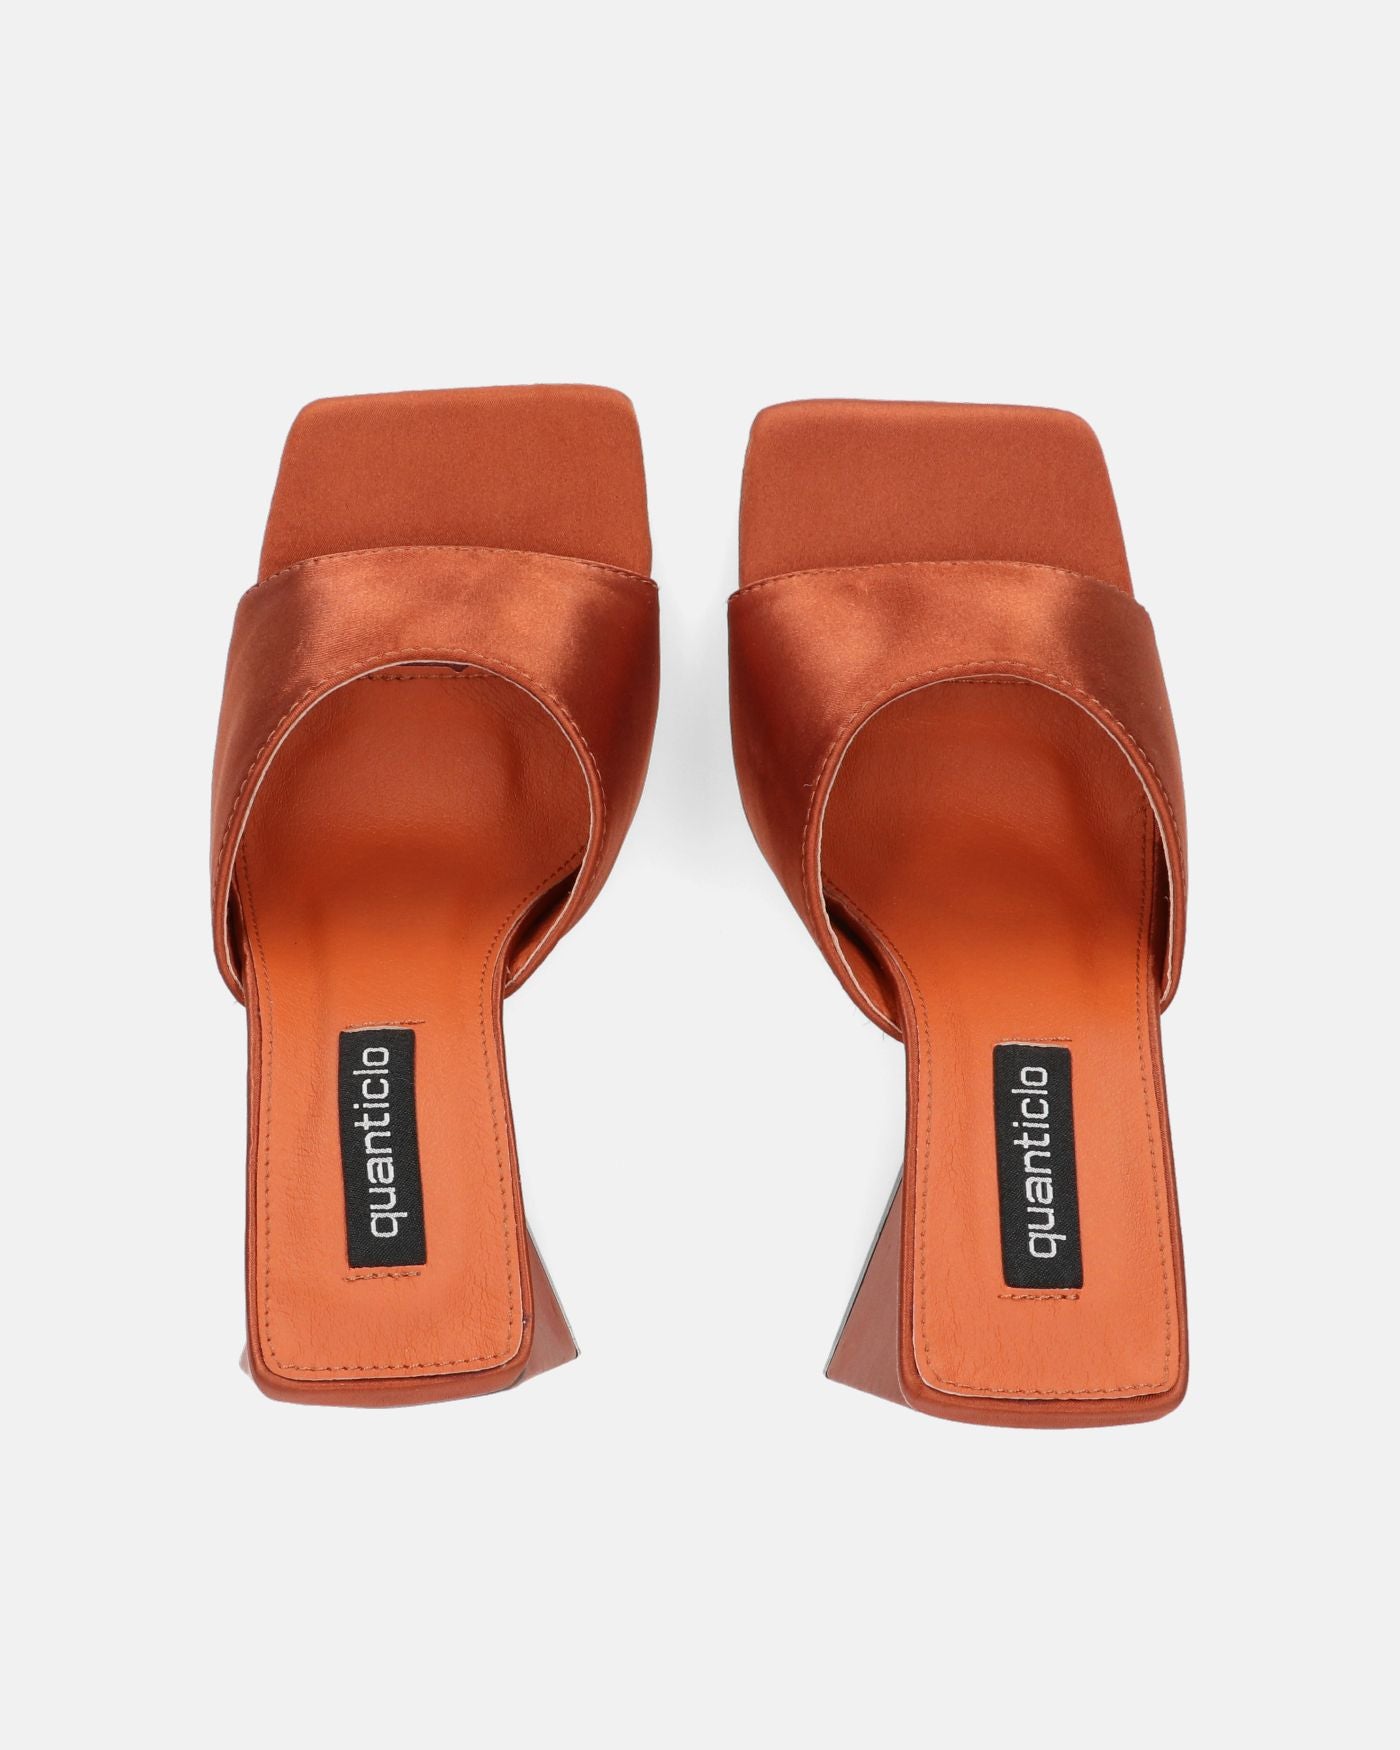 KAMELYA - copper-colored lycra square heel sandals